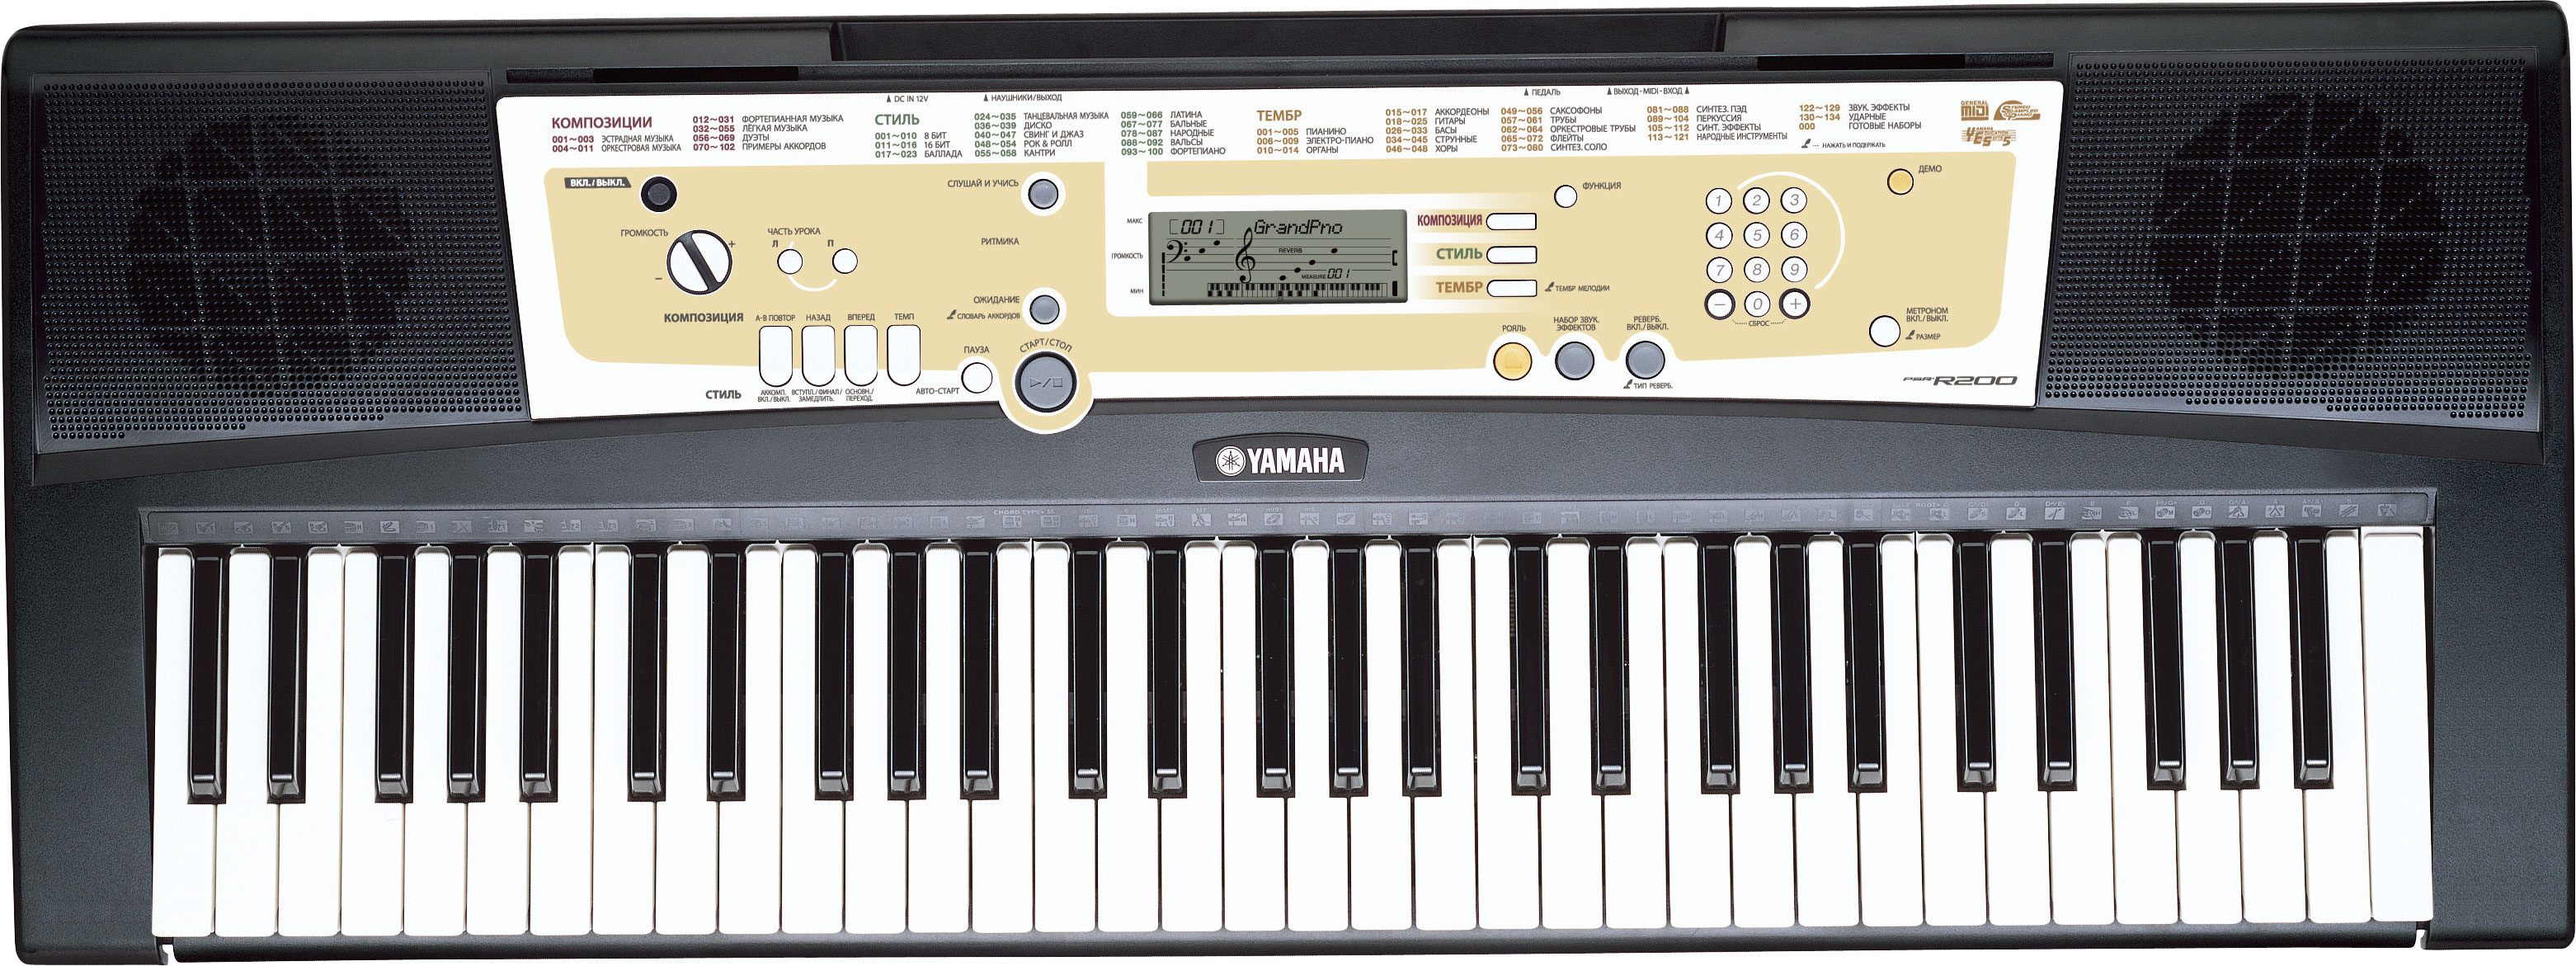 Yamaha синтезаторы инструкция